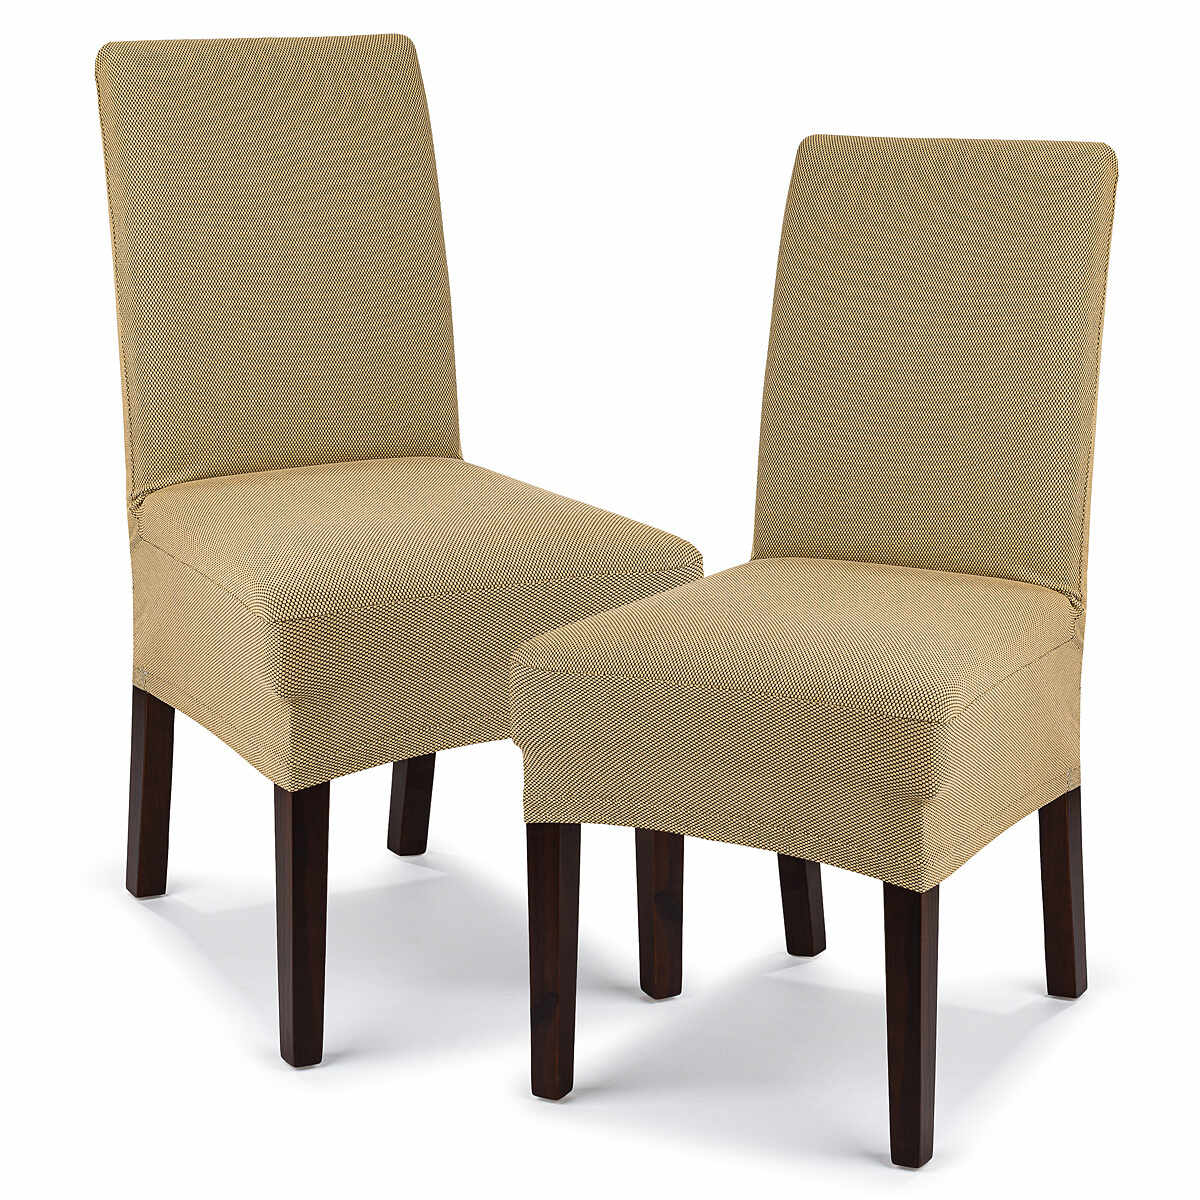 Husă multielastică 4Home Comfort pentru scaun, be j, 40 - 50 cm, set 2 buc.